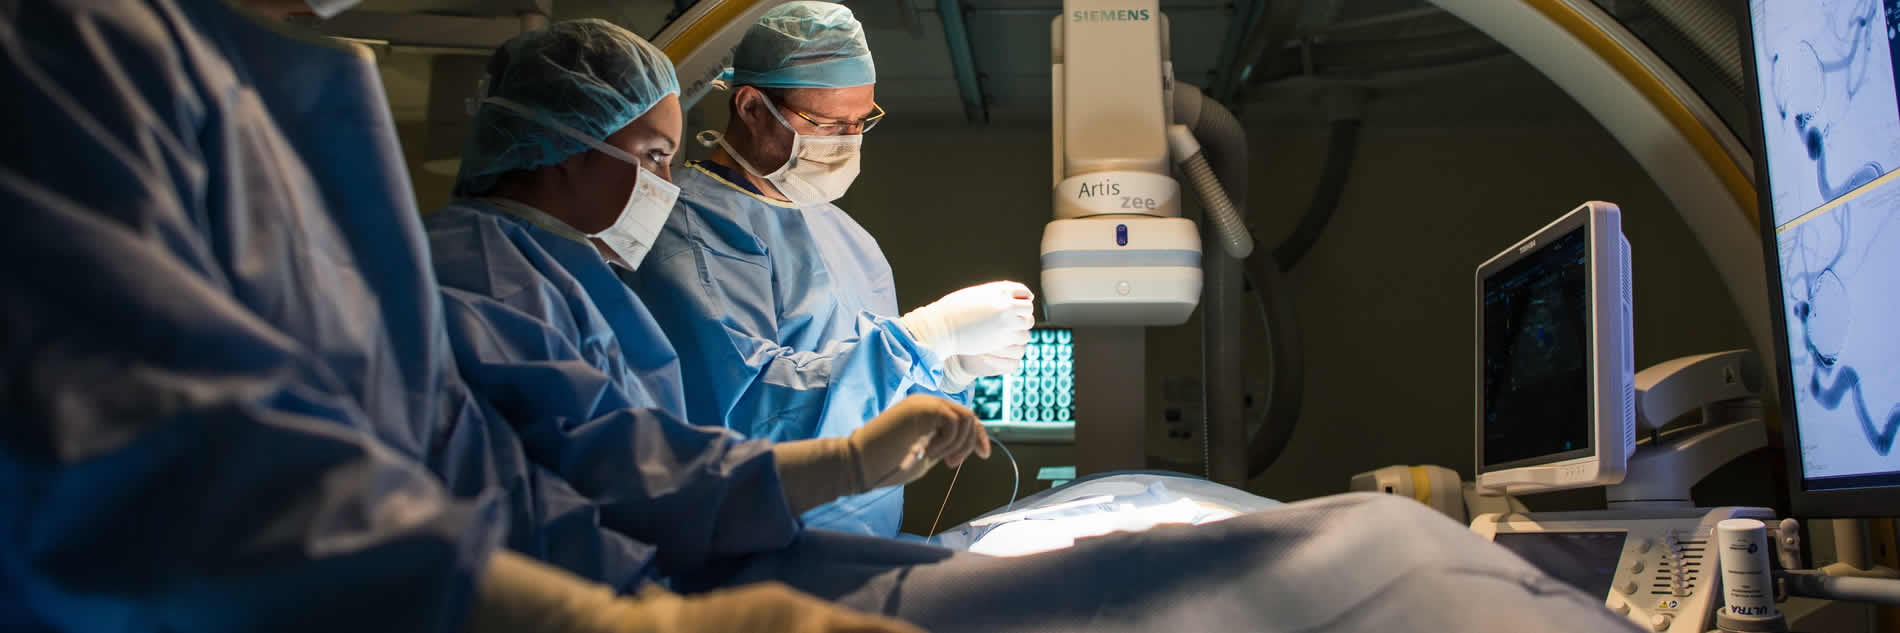 Intracranial Aneurysm Surgery in Iran